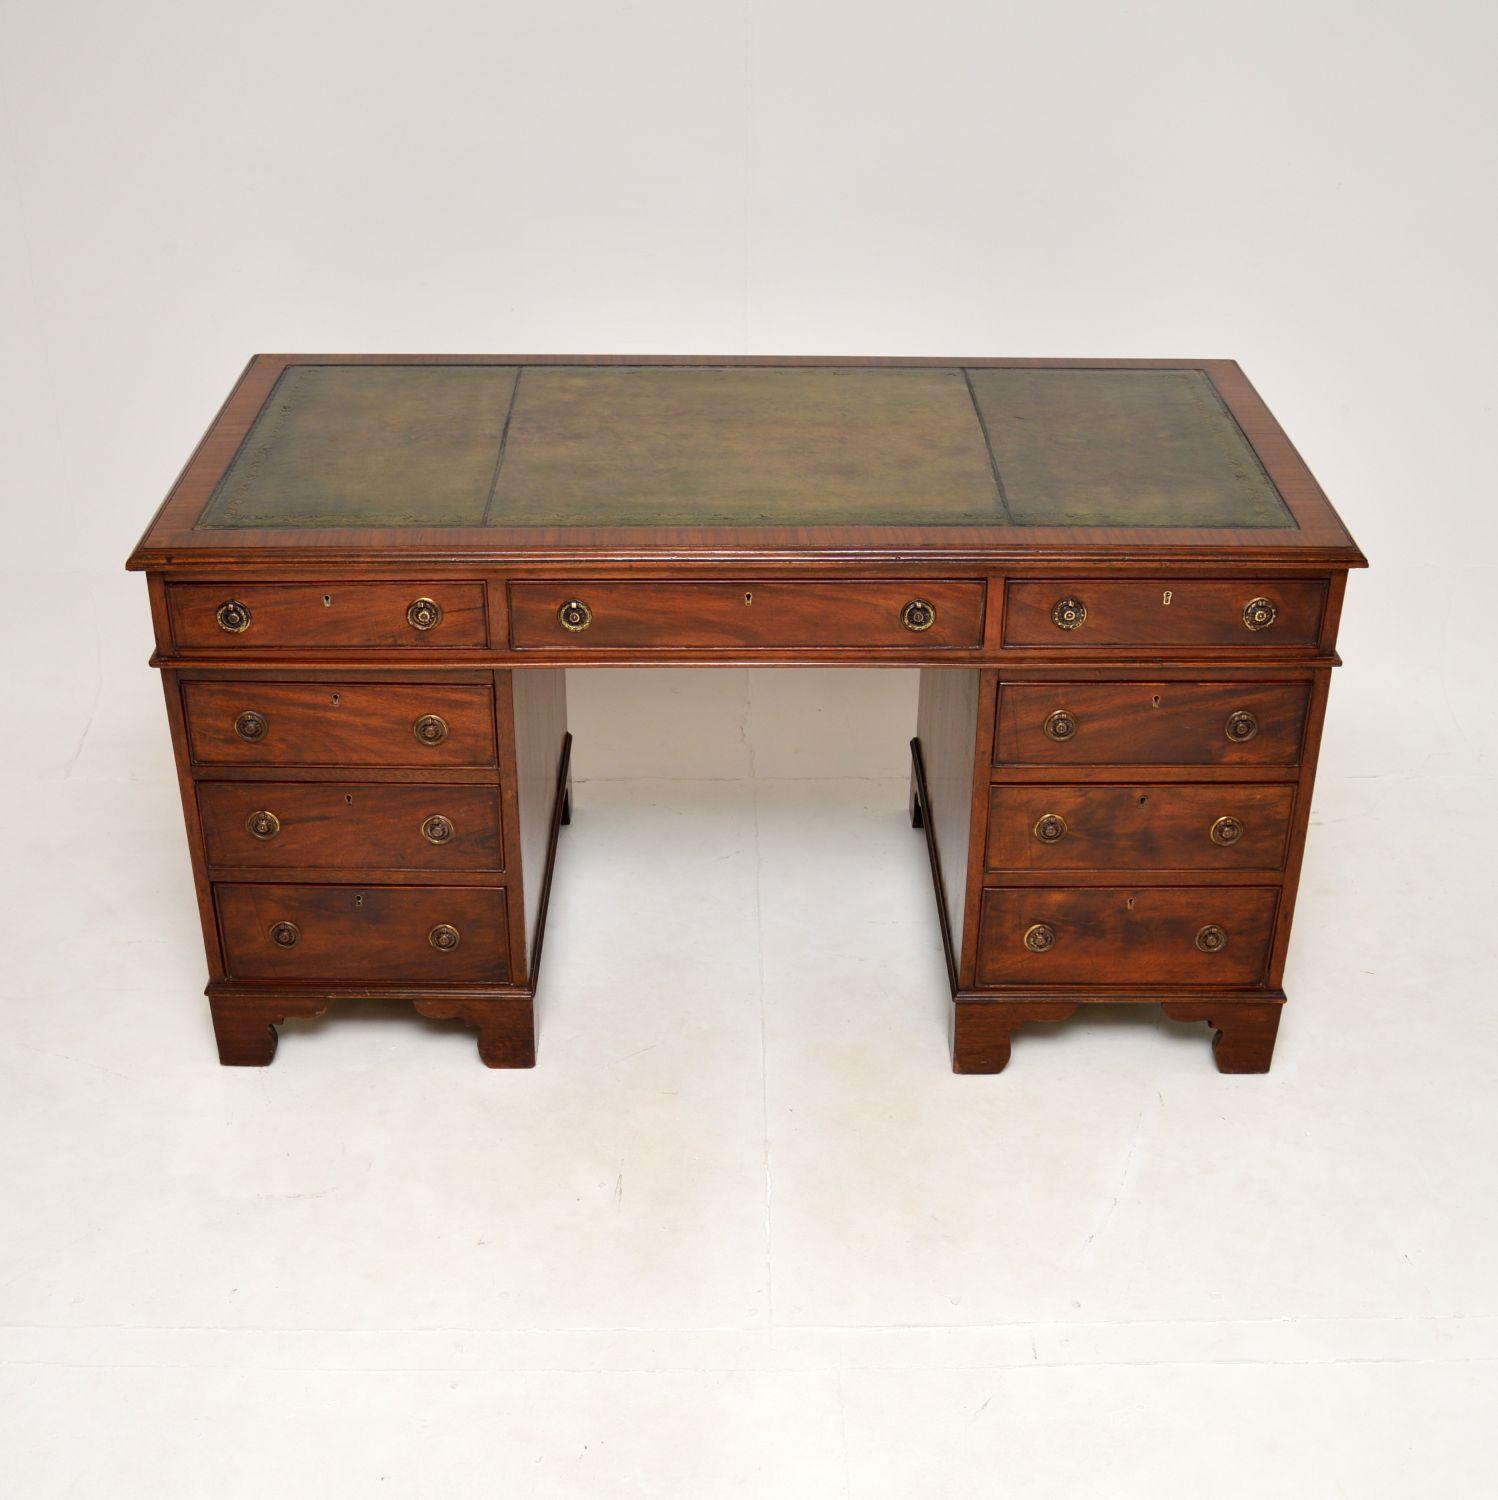 Eine elegante und sehr beeindruckende antike georgianische Lederplatte Sockel Schreibtisch. Sie wurde in England hergestellt und stammt aus der Zeit zwischen 1800 und 1820.

Es ist von hervorragender Qualität und hat eine gute Größe. Er steht auf